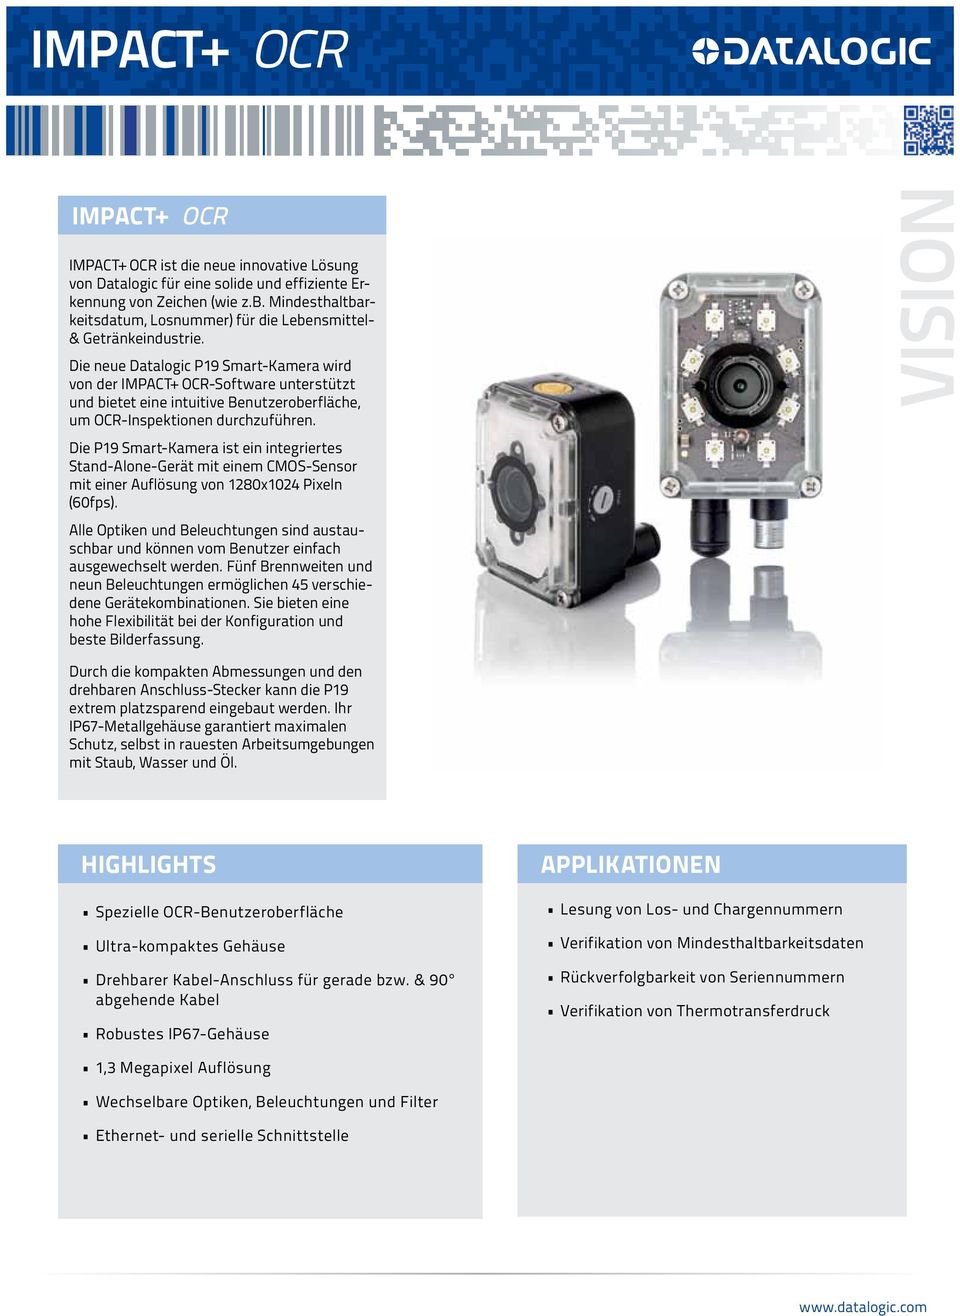 Die neue Datalogic P19 Smart-Kamera wird von der IMPACT+ OCR-Software unterstützt und bietet eine intuitive Benutzeroberfläche, um OCR-Inspektionen durchzuführen.